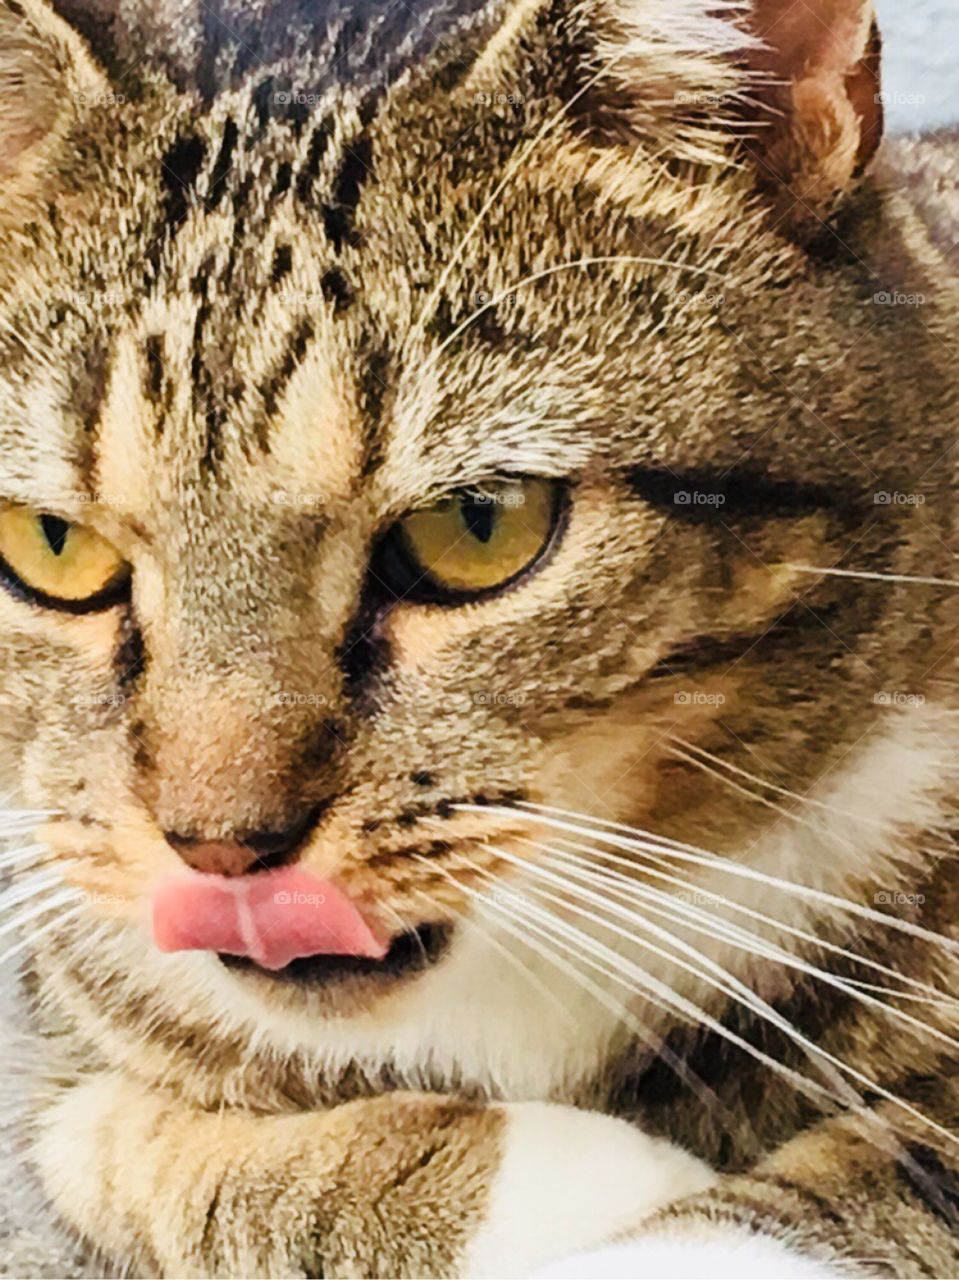 Cat’s tongue